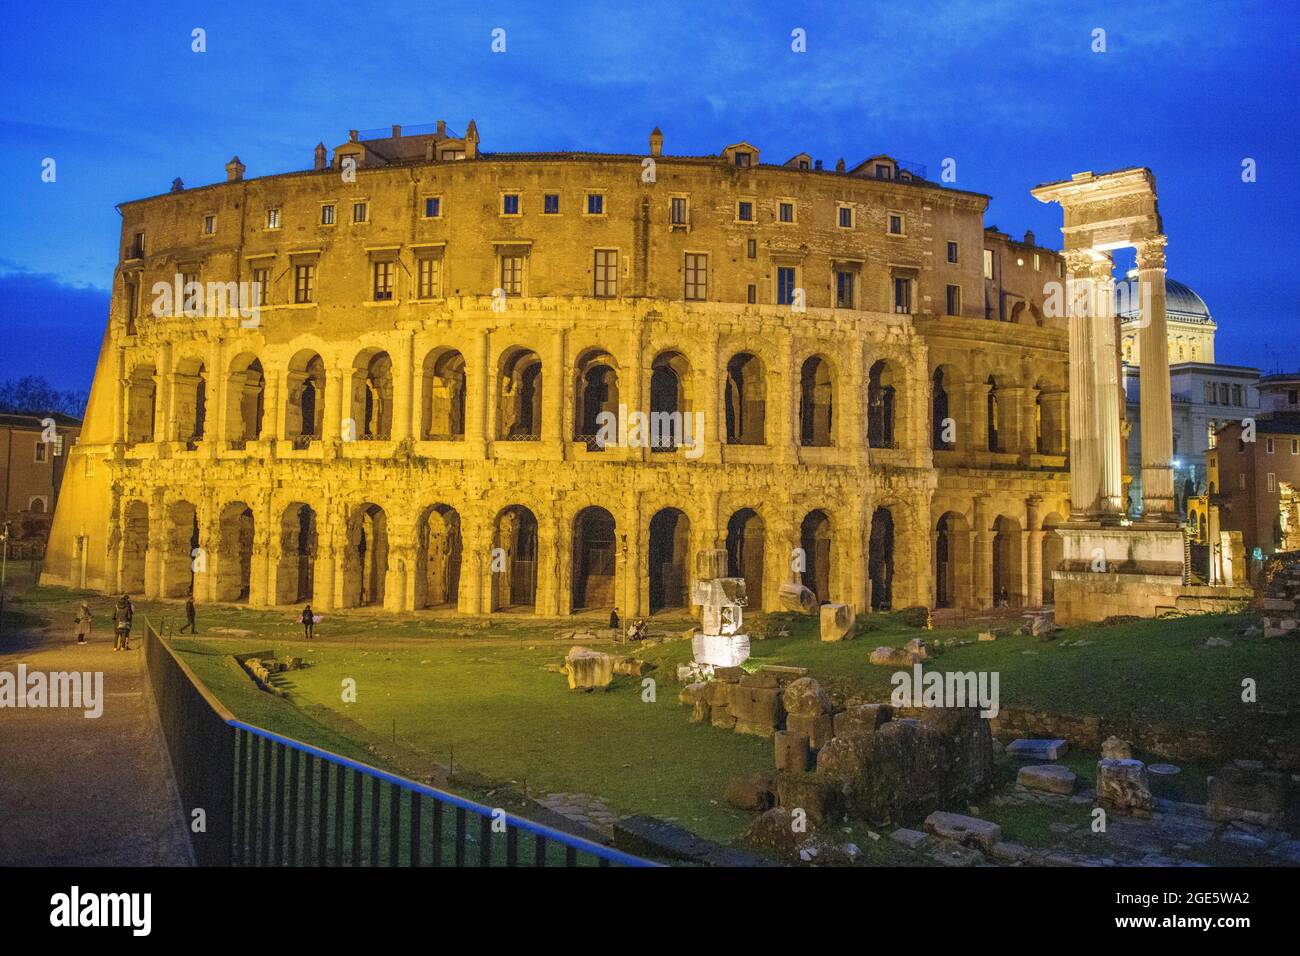 Abendliche Lichtinstallation im Marcellus Theater, neben antiken Säulen des Apollontempels, Rom, Latium, Italien Stockfoto